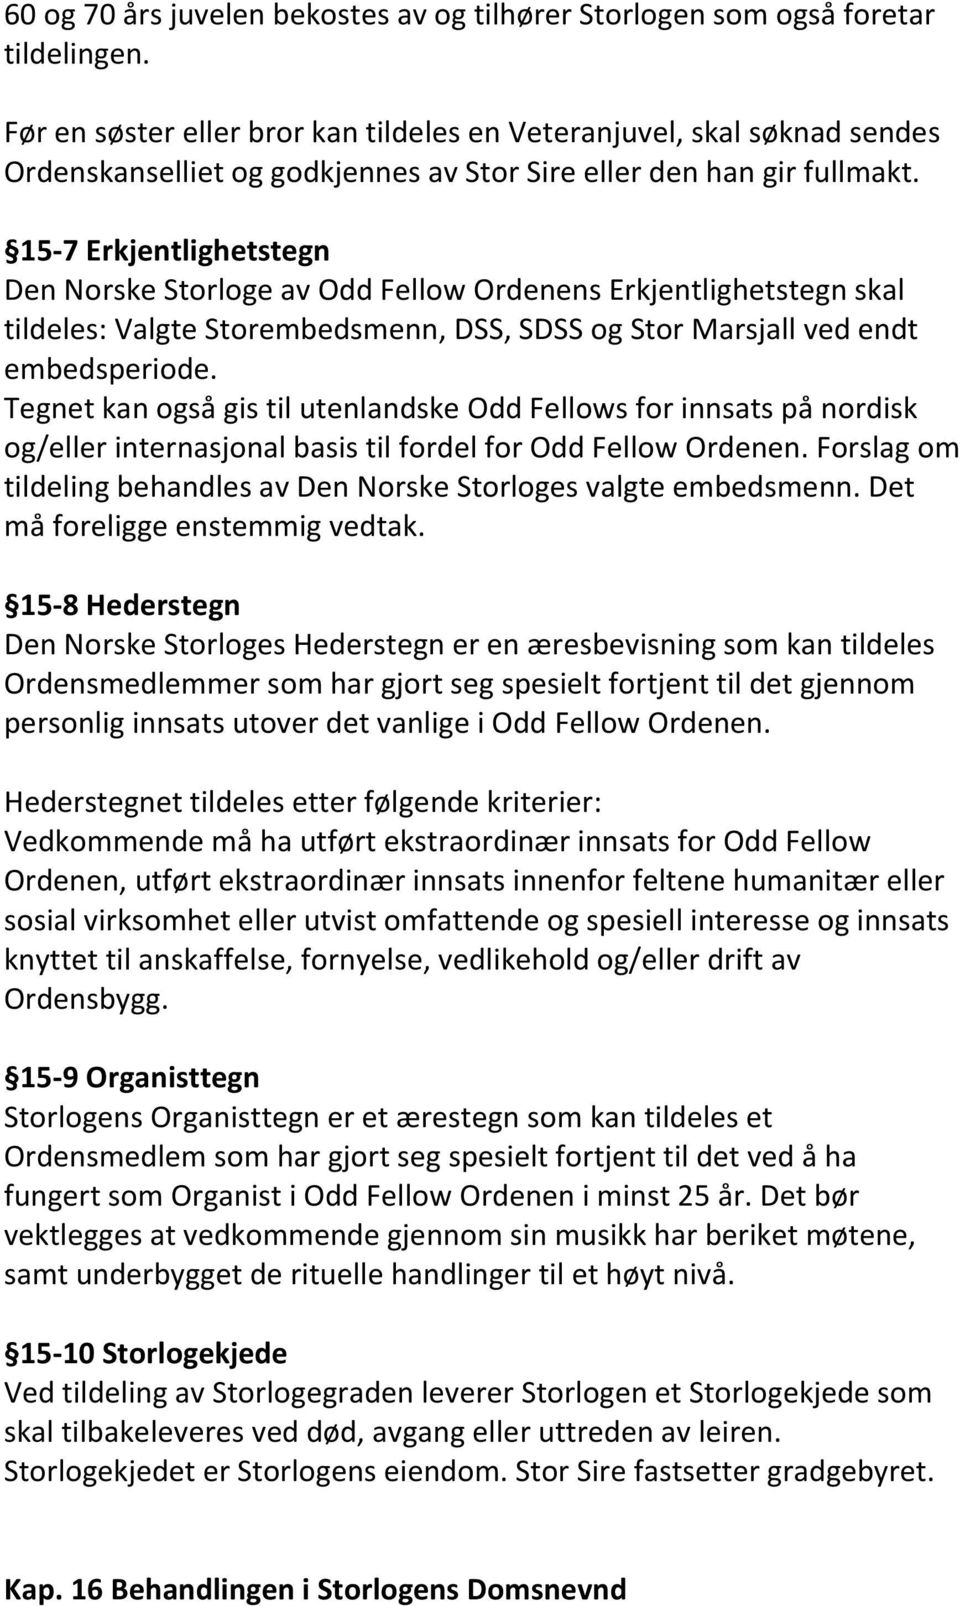 15-7 Erkjentlighetstegn Den Norske Storloge av Odd Fellow Ordenens Erkjentlighetstegn skal tildeles: Valgte Storembedsmenn, DSS, SDSS og Stor Marsjall ved endt embedsperiode.